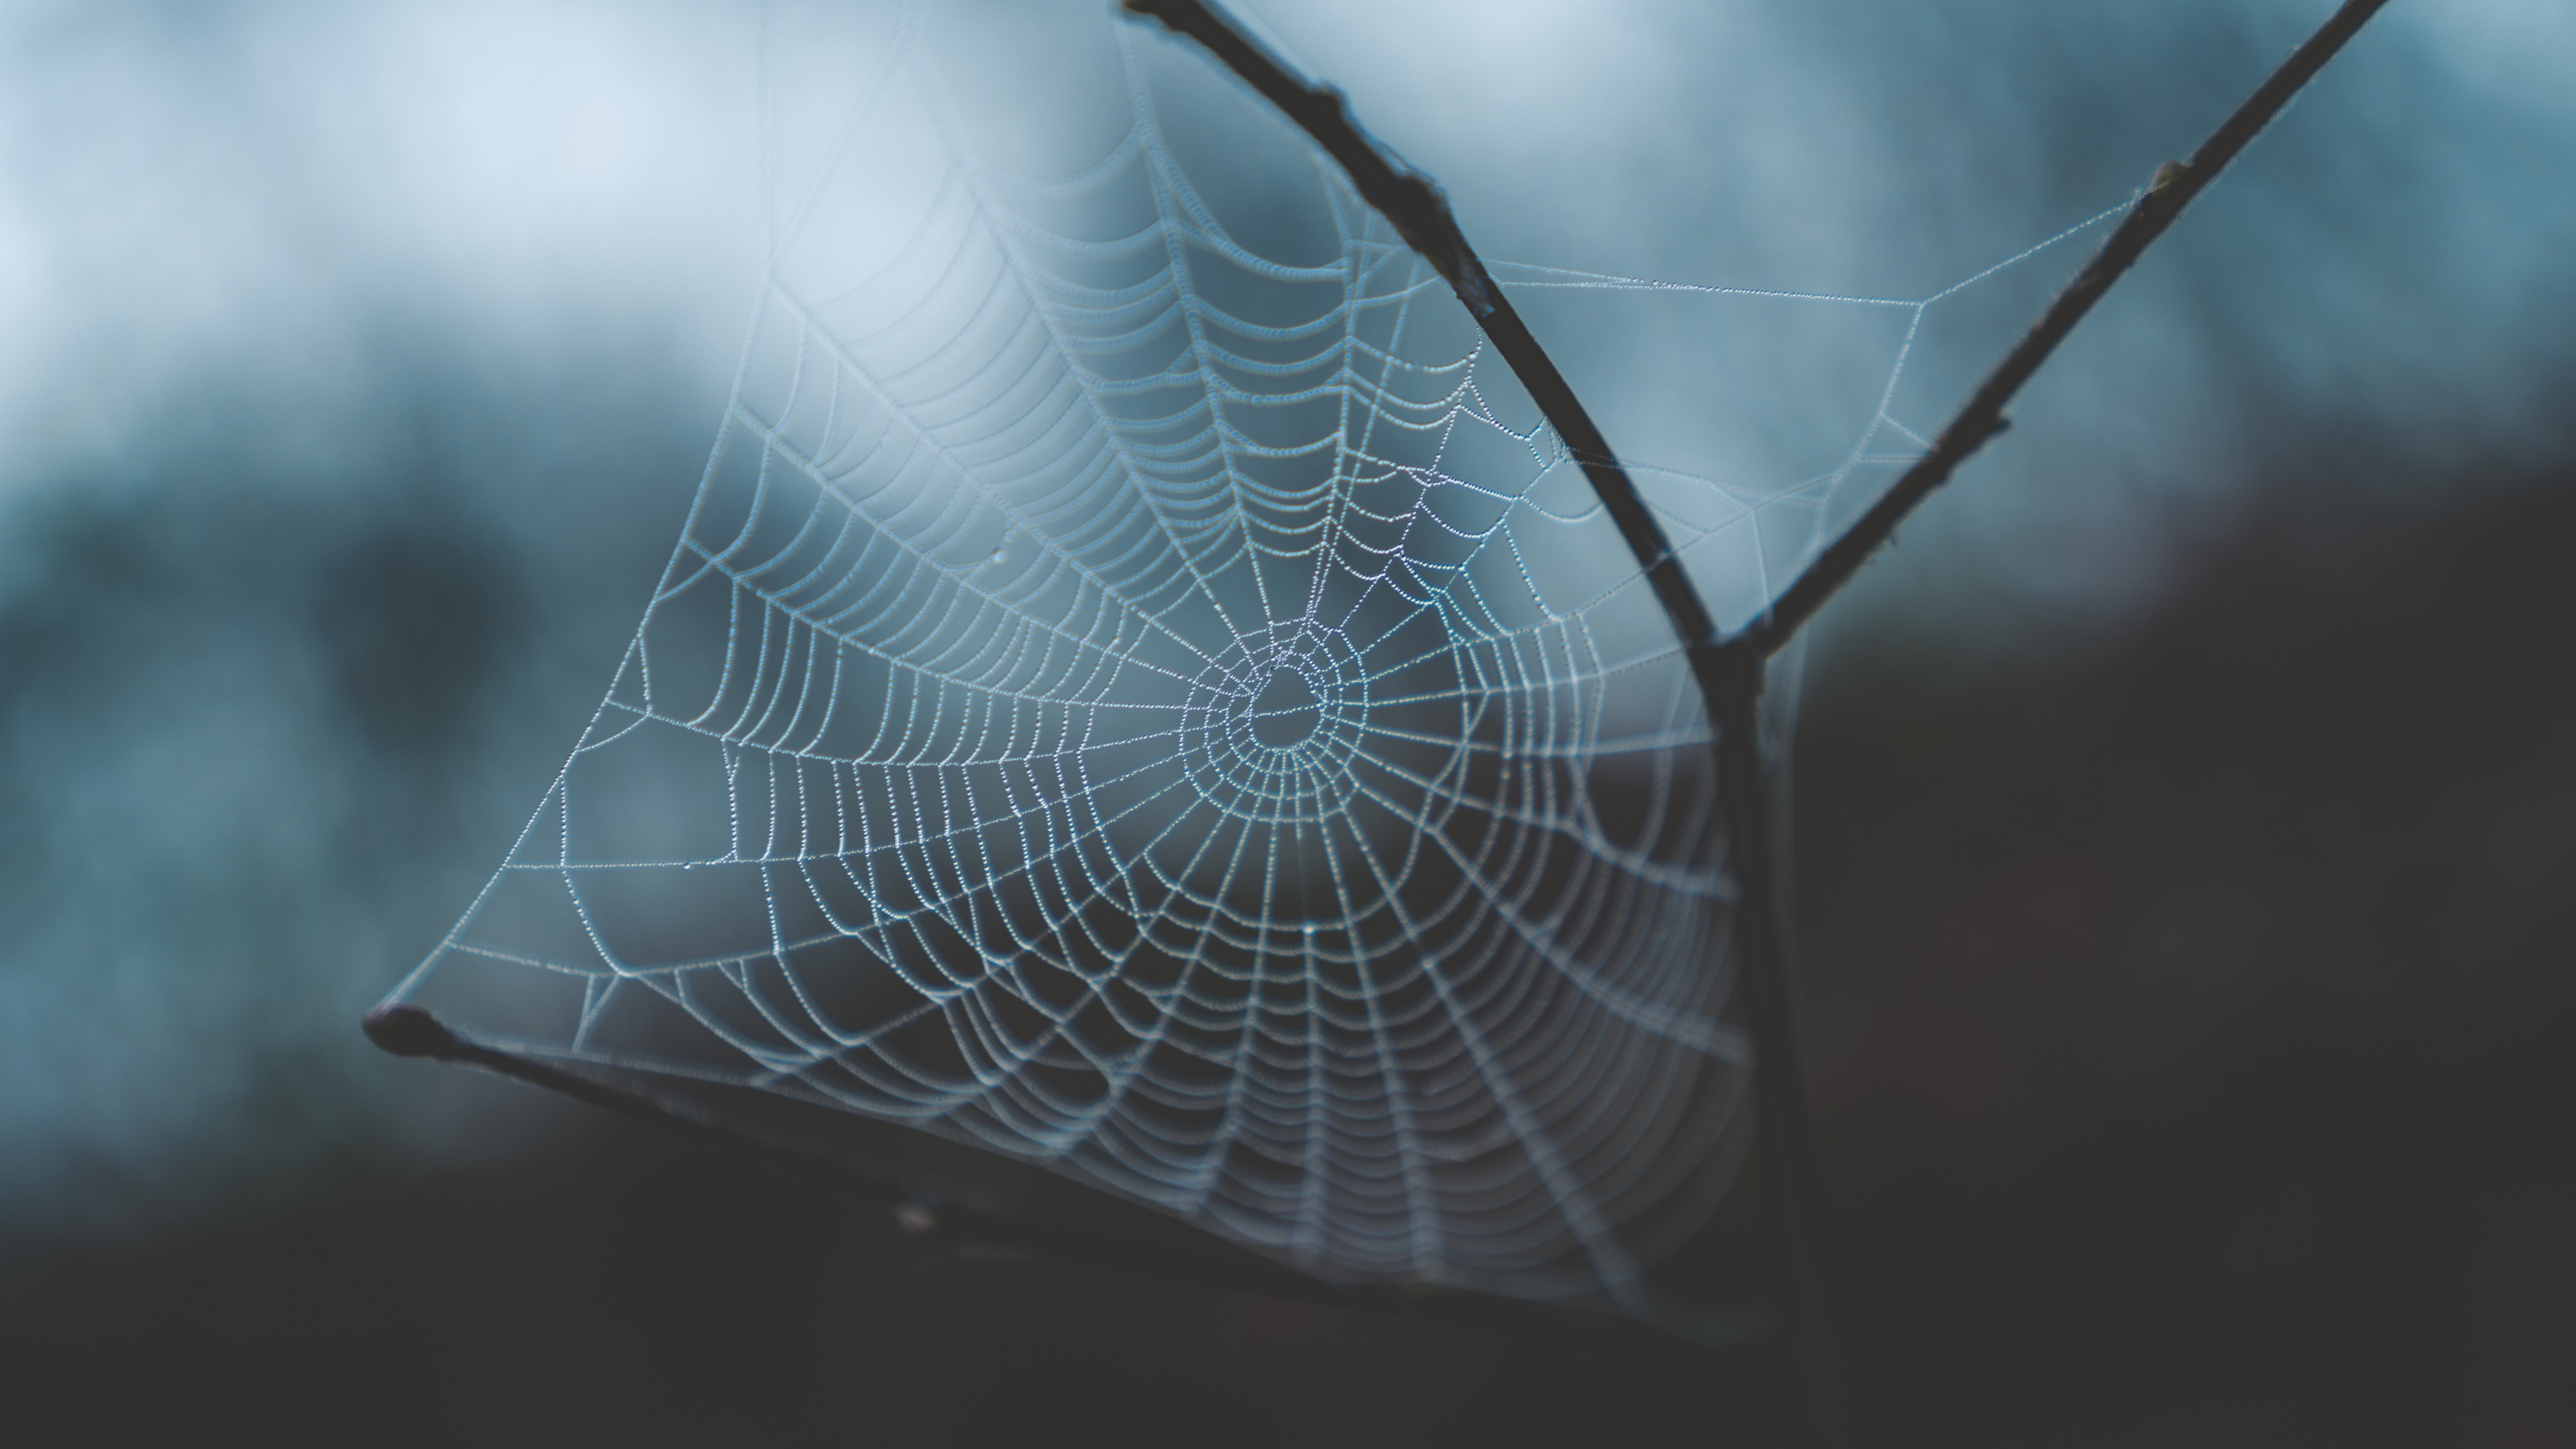 Spinnennetz, Wasser, Morgen, Branch, Blatt. Wallpaper in 3840x2160 Resolution